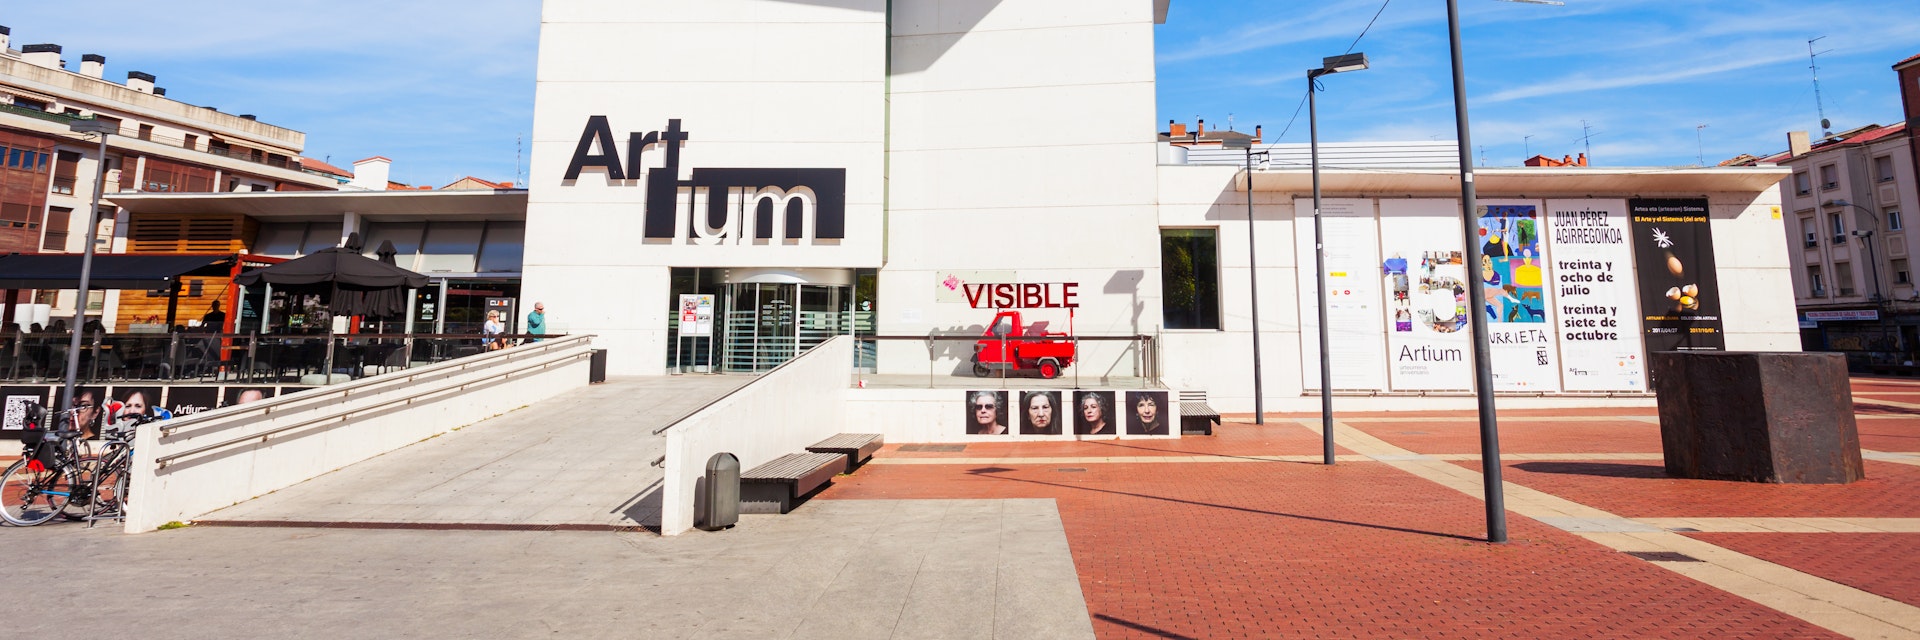 The Artium Museum in Vitoria Gasteiz, Basque country in Spain.